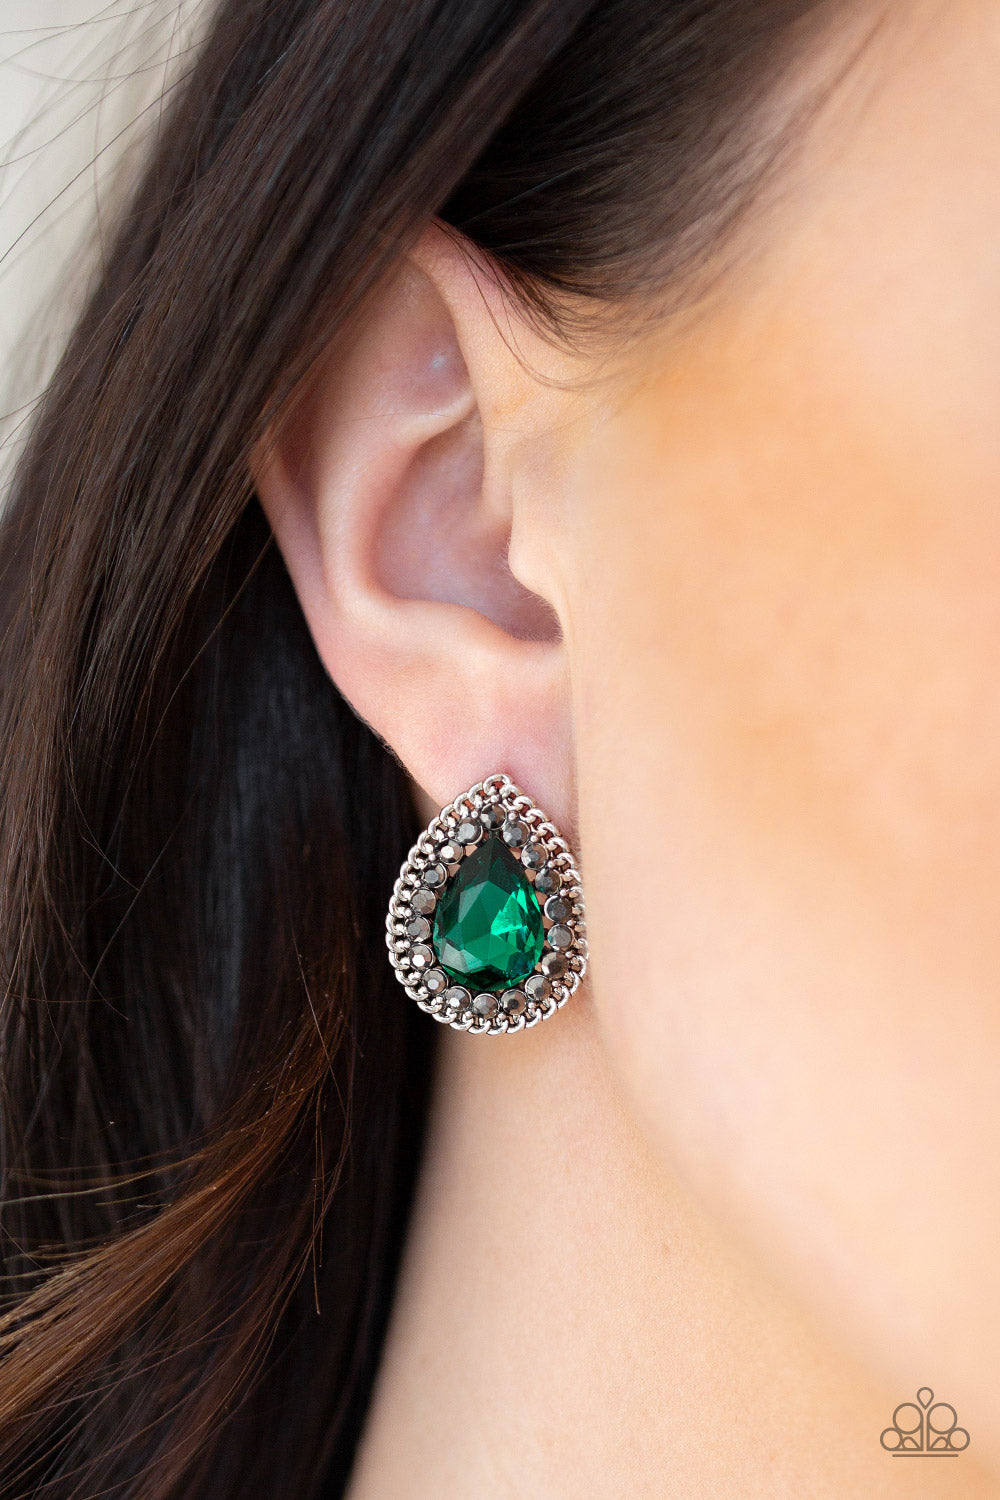 Paparazzi Debutante Debut Green earrings. Get free shipping. #P5PO-GRXX-022XX